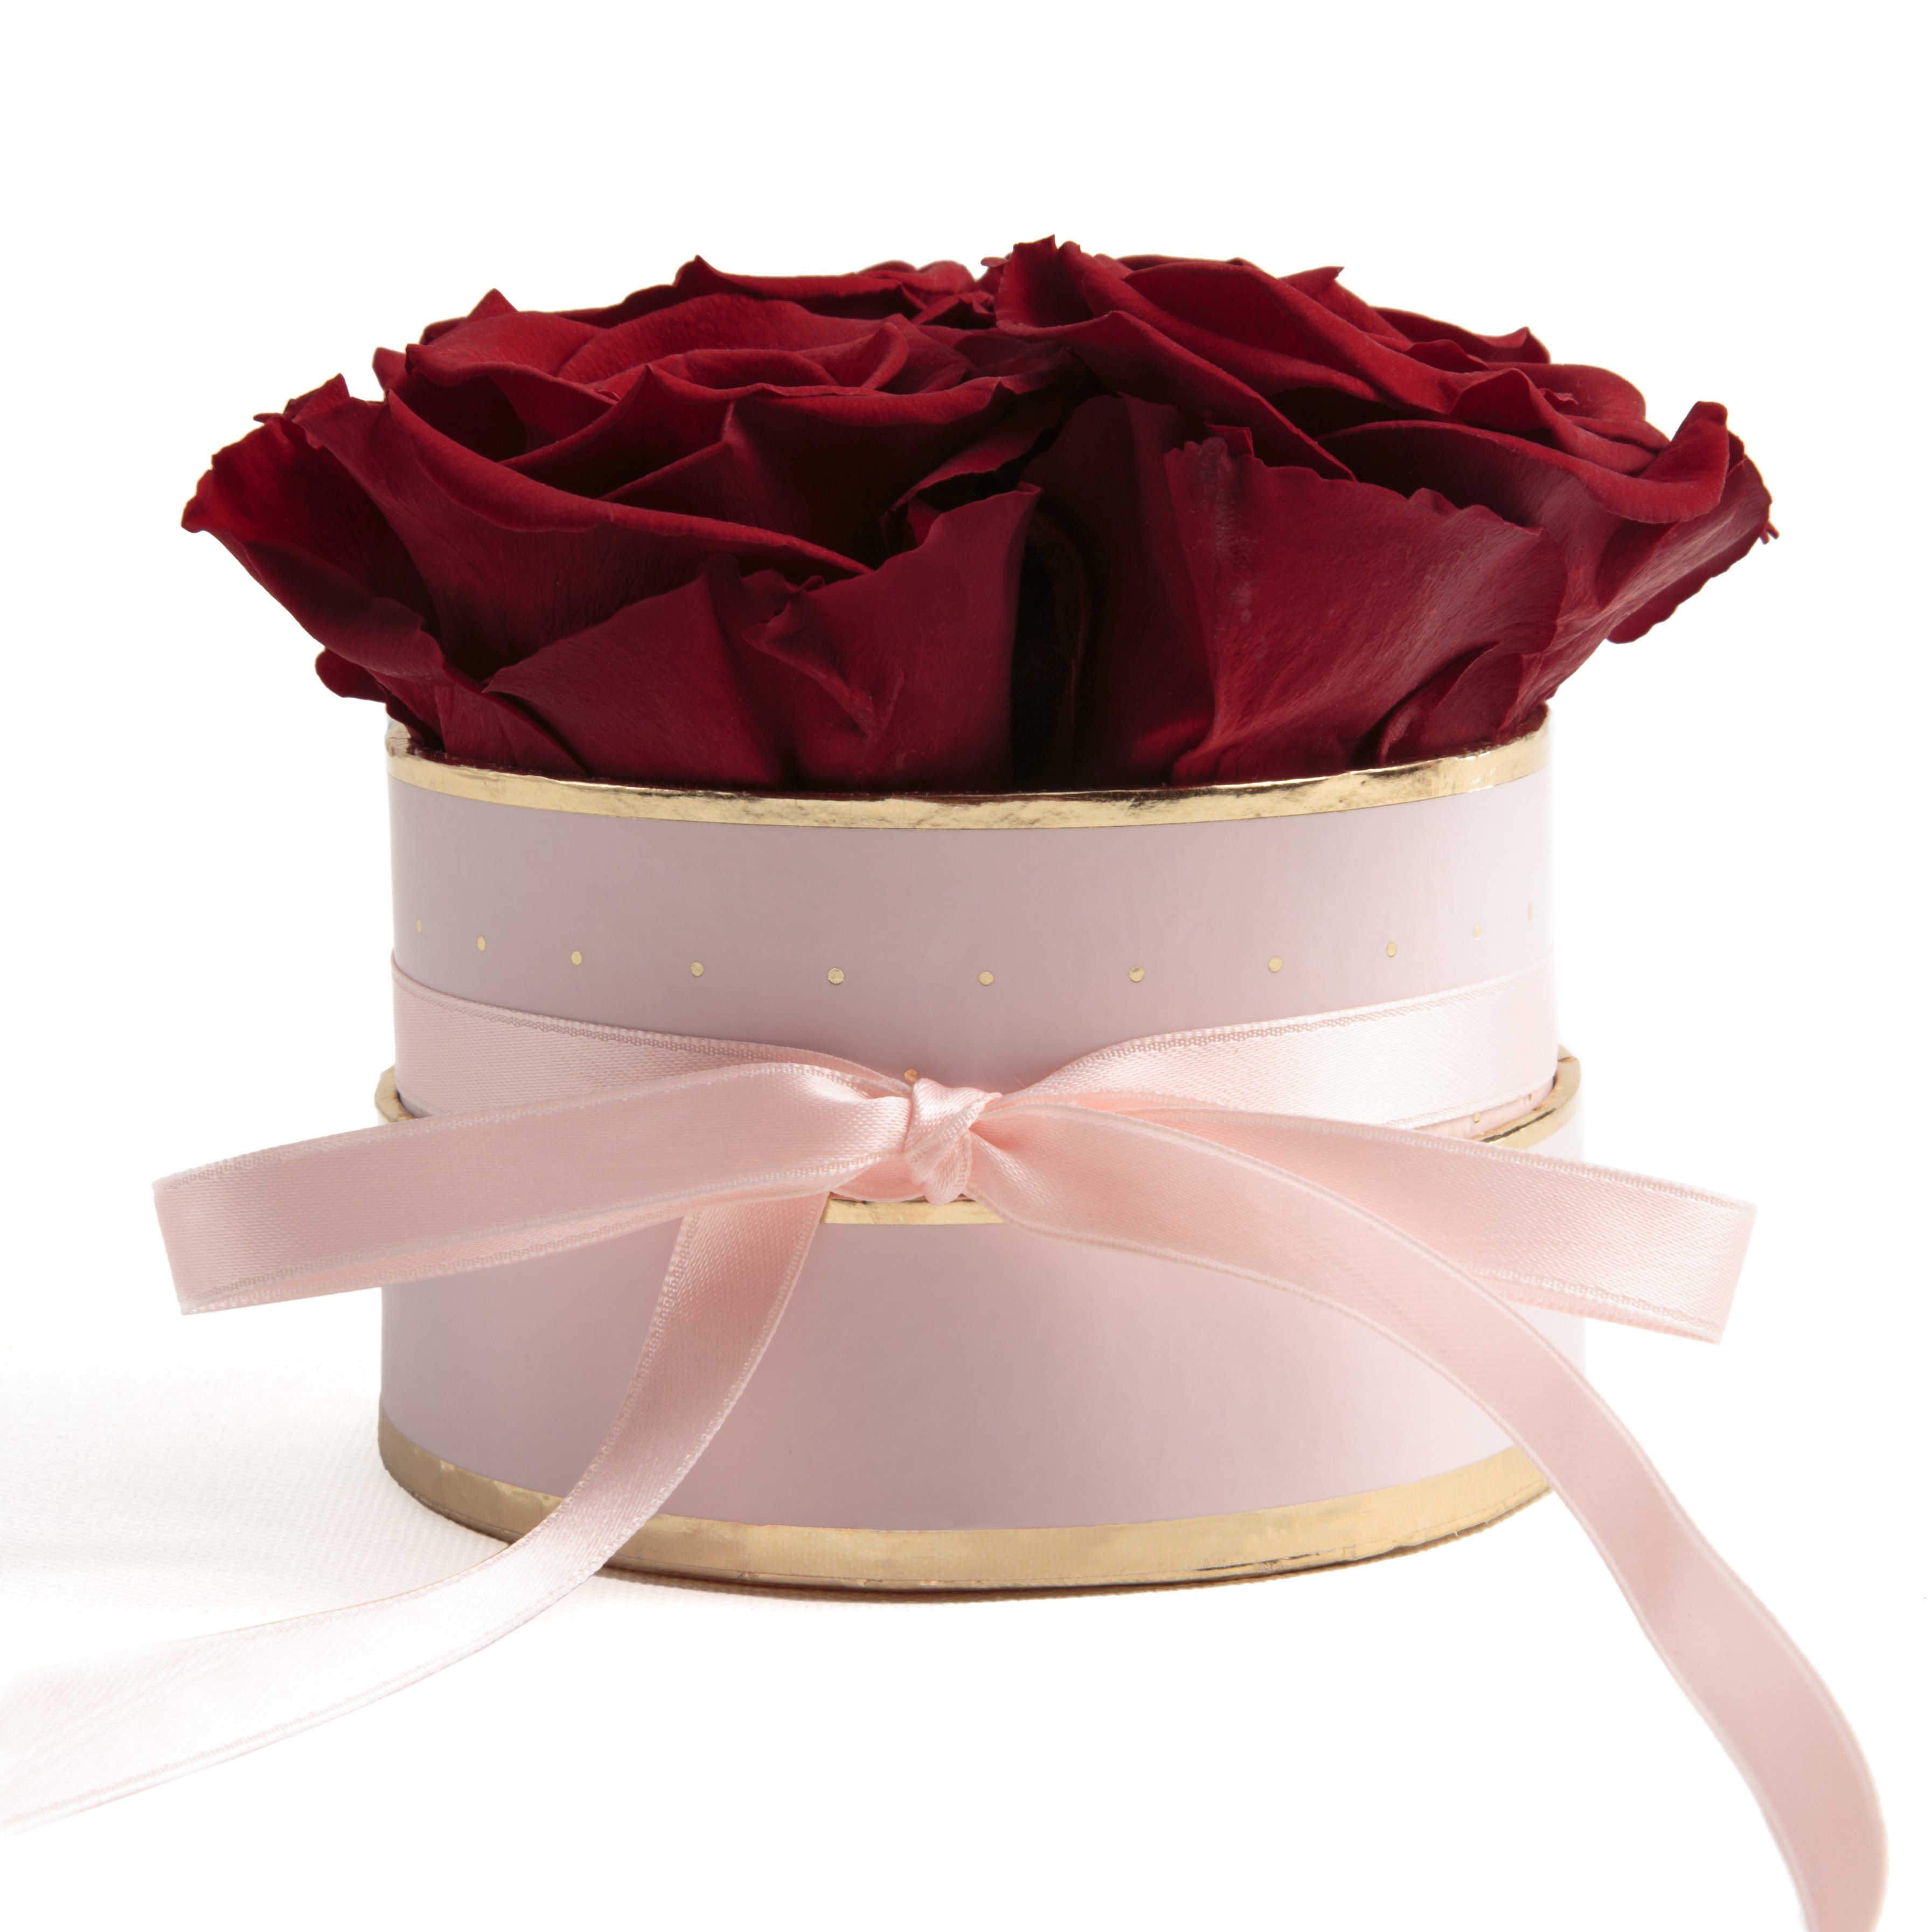 Kunstblume Infinity Rosenbox rosa rund 4 konservierte Rosen Geschenk für Frauen Rose, ROSEMARIE SCHULZ Heidelberg, Höhe 10 cm, echte konservierte Rosen Burgundy